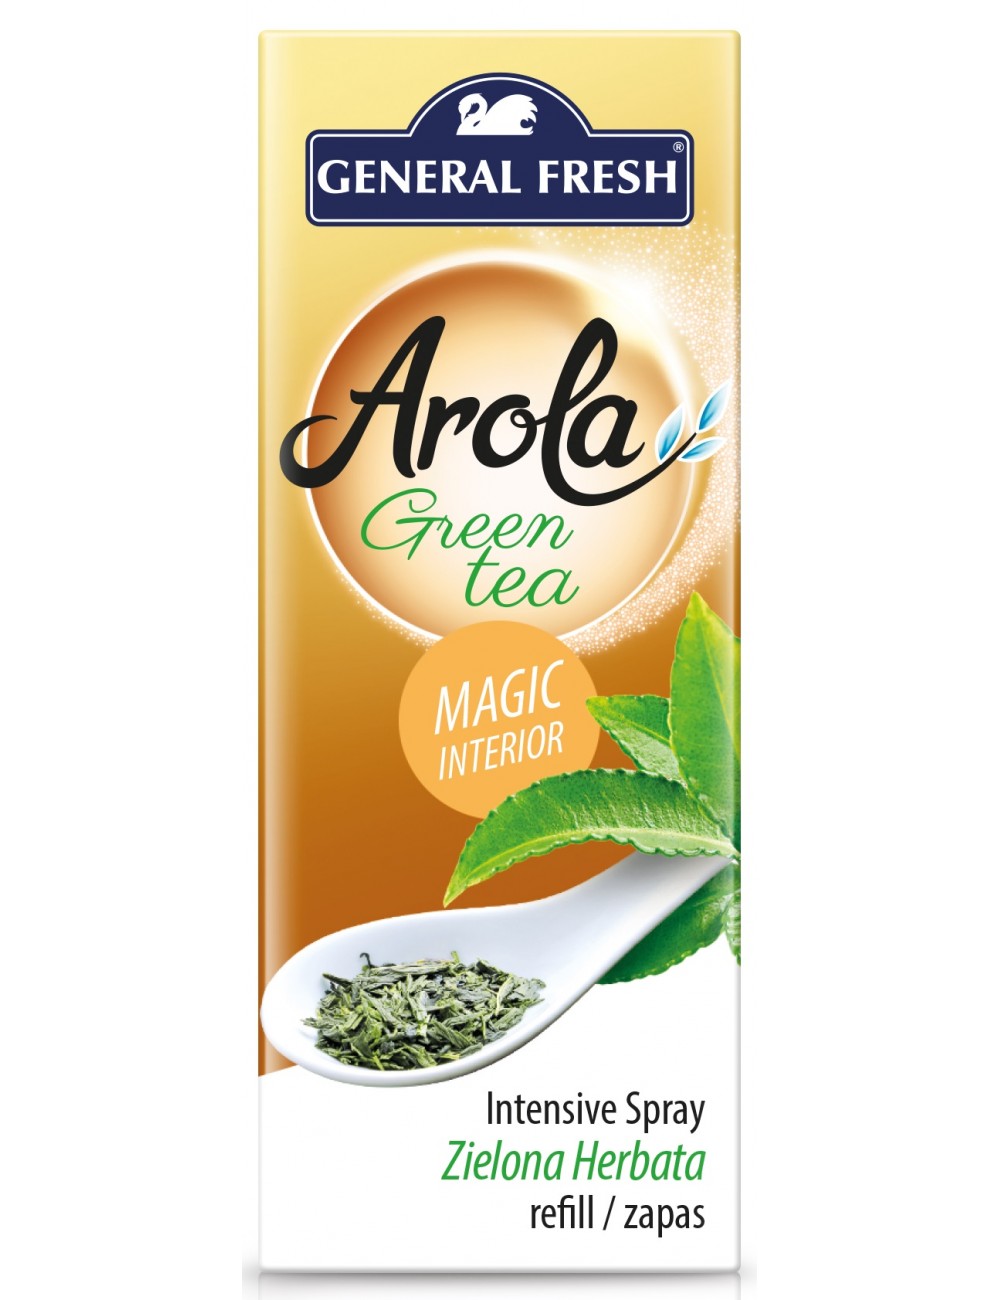 General fresh Magiczna Szyszka Zielona Herbata i Zioła Zapas 40ml – odświeżacz powietrza o przyjemnym zapachy